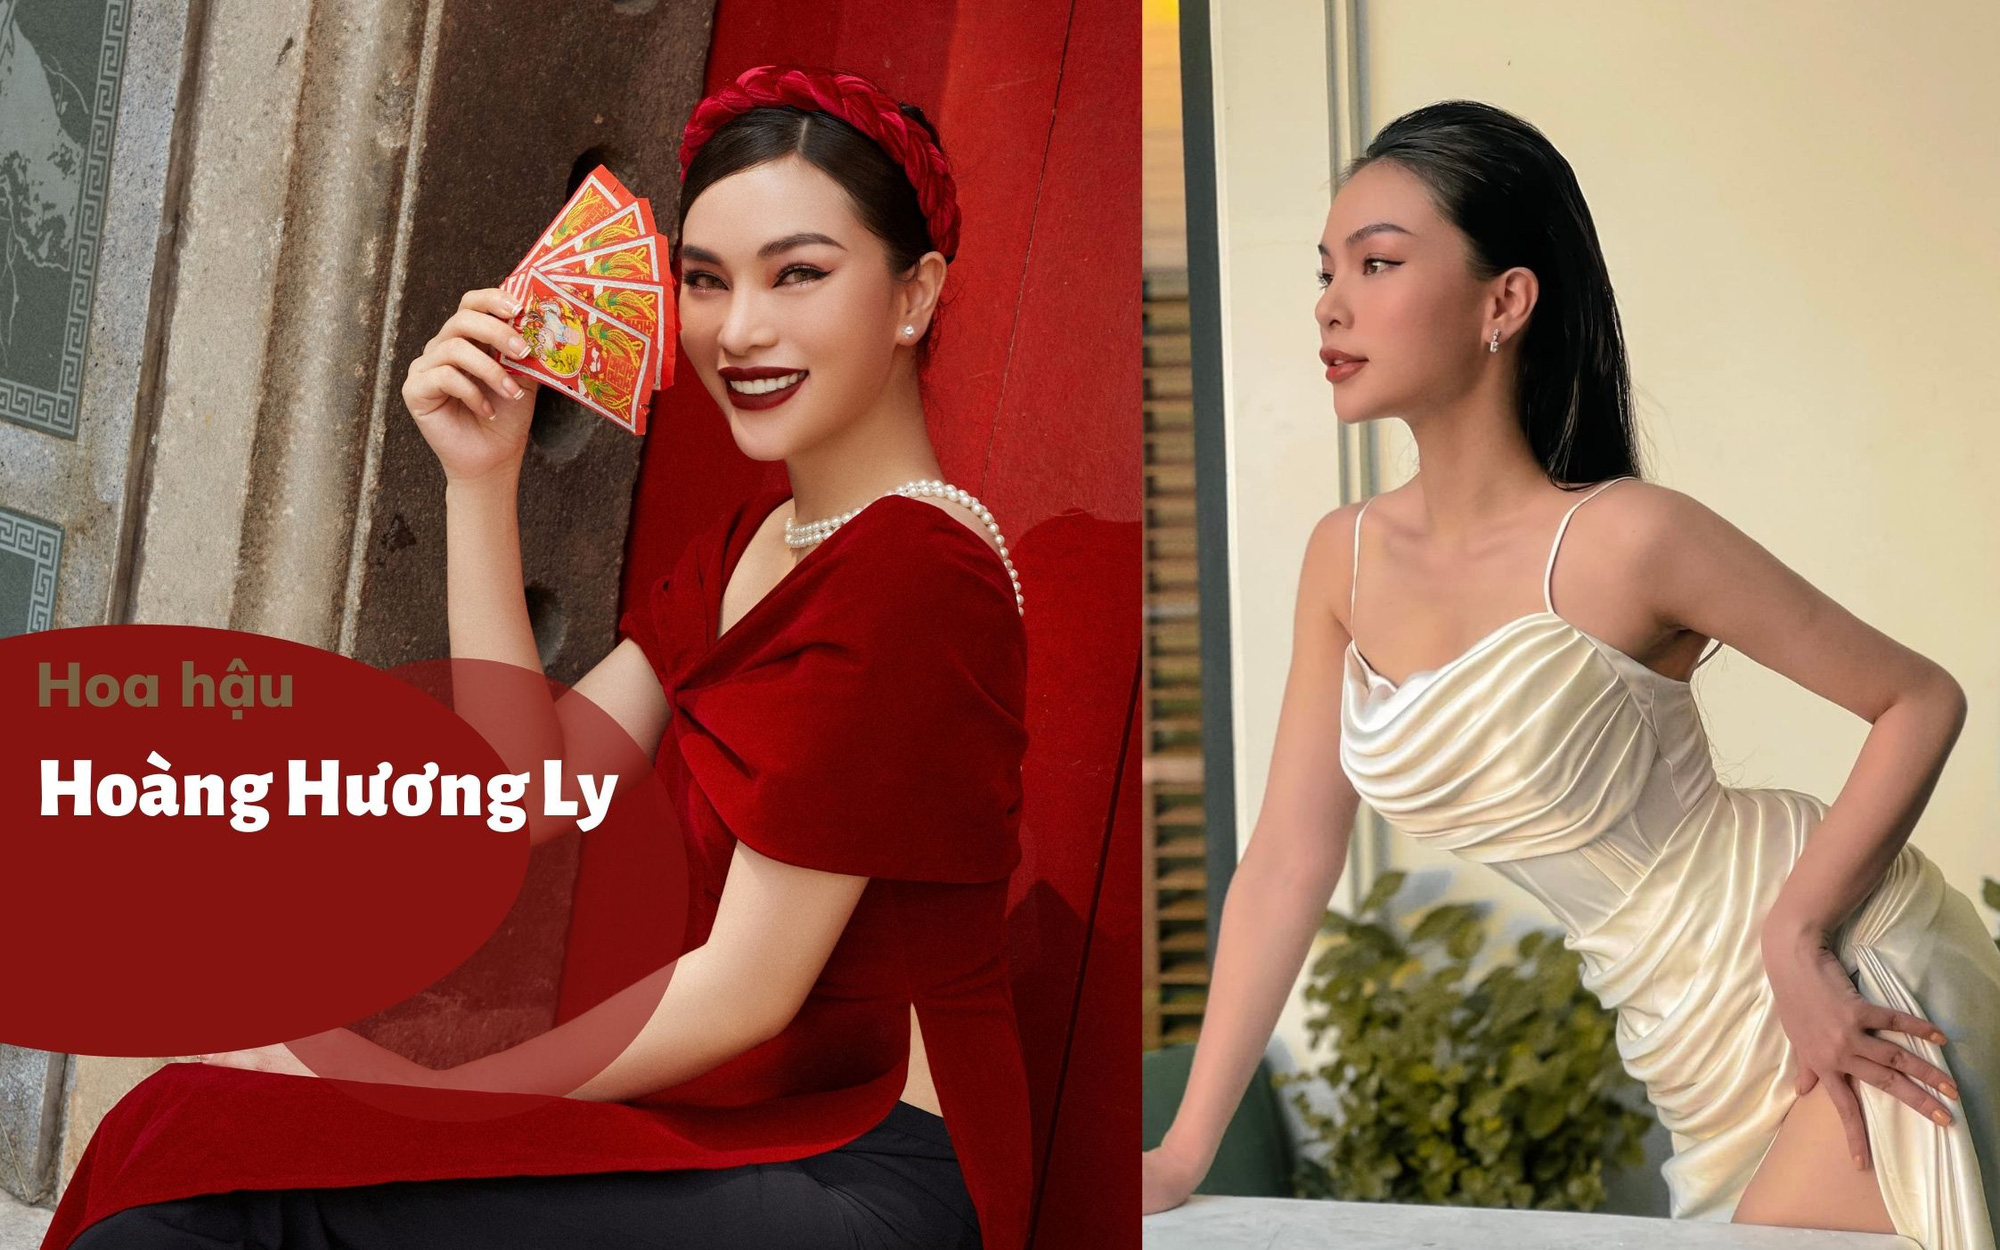 Hoa hậu Hoàng Hương Ly: Giảm cân sau Tết không khó nhờ có “chìa khóa vàng”